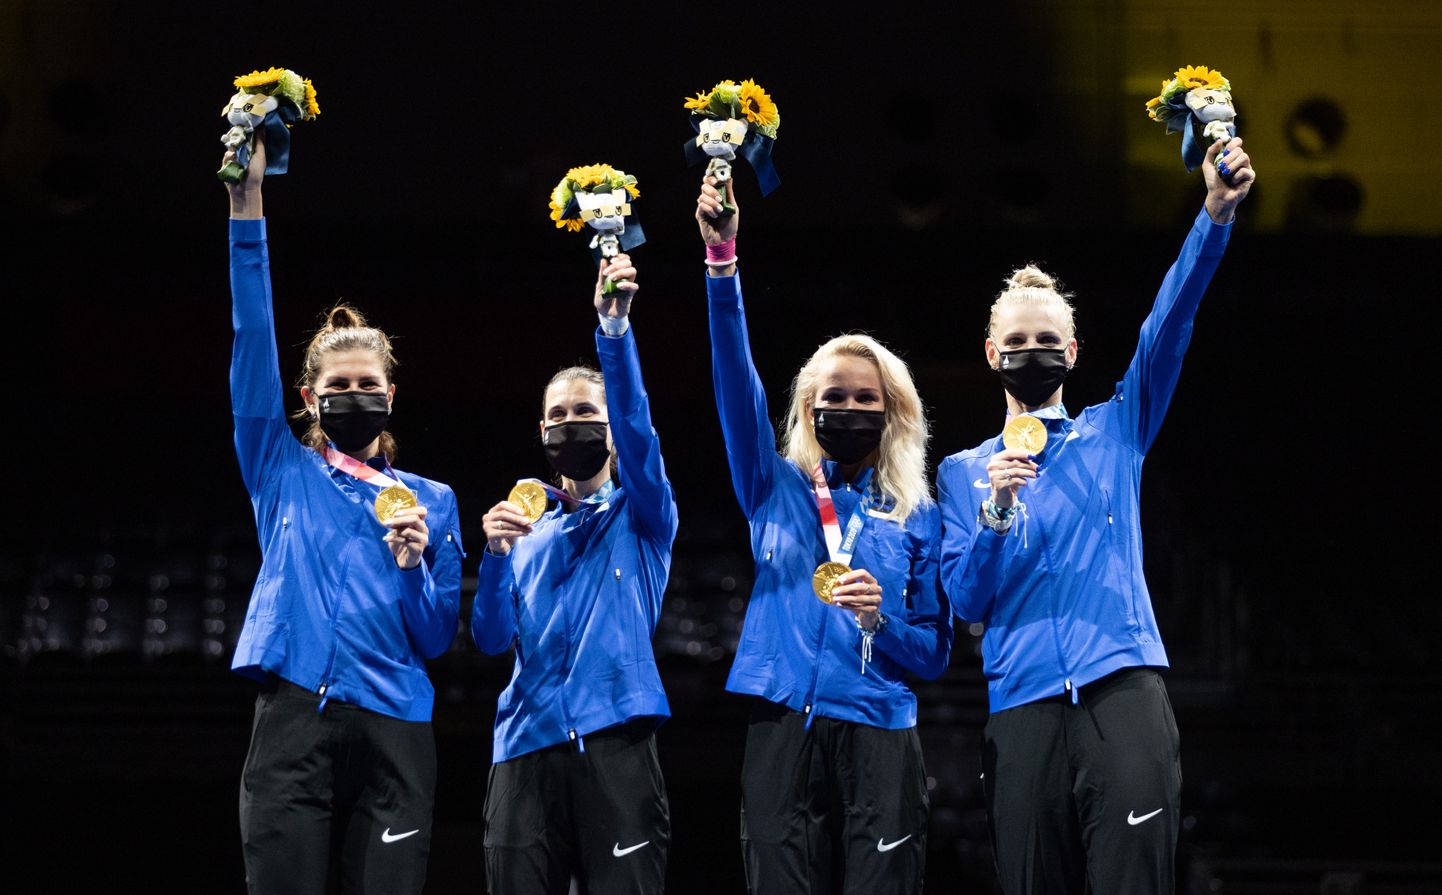 Eesti epeenaiskond olümpiapoodiumil. Vasakult: Julia Beljajeva, Irina Embrich, Erika Kirpu ja Katrina Lehis.